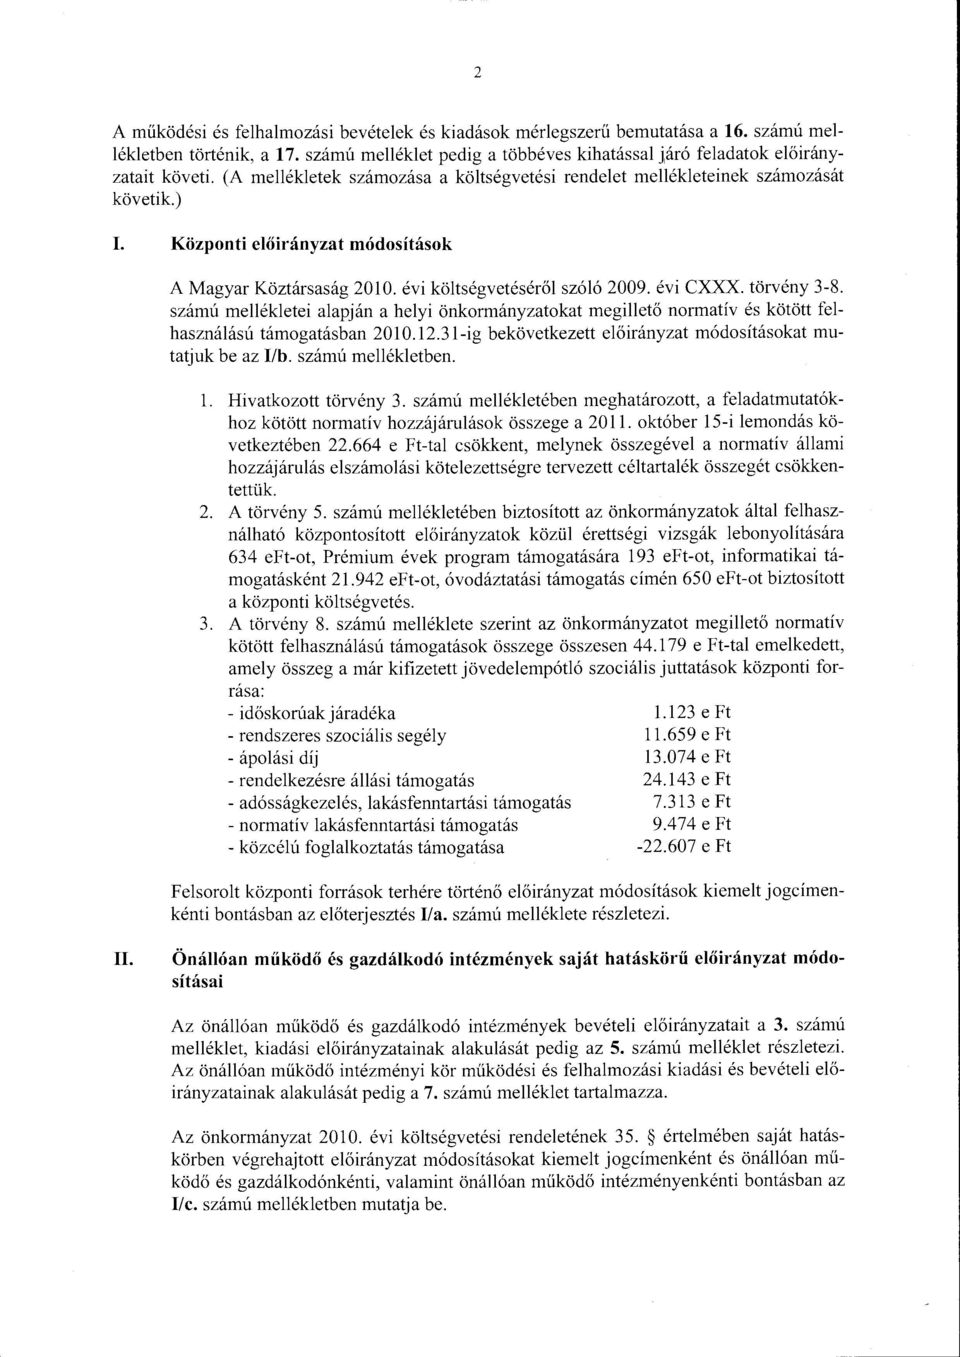 szárnú rnellékletei alapján a helyi önkrmányzatkat megillető nrmatív és kötött felhasználású támgatásban 2010.12.31-ig bekövetkezett előirányzat rnódsításkat mutatjuk be az 1/b. szárnú rnellékletben.